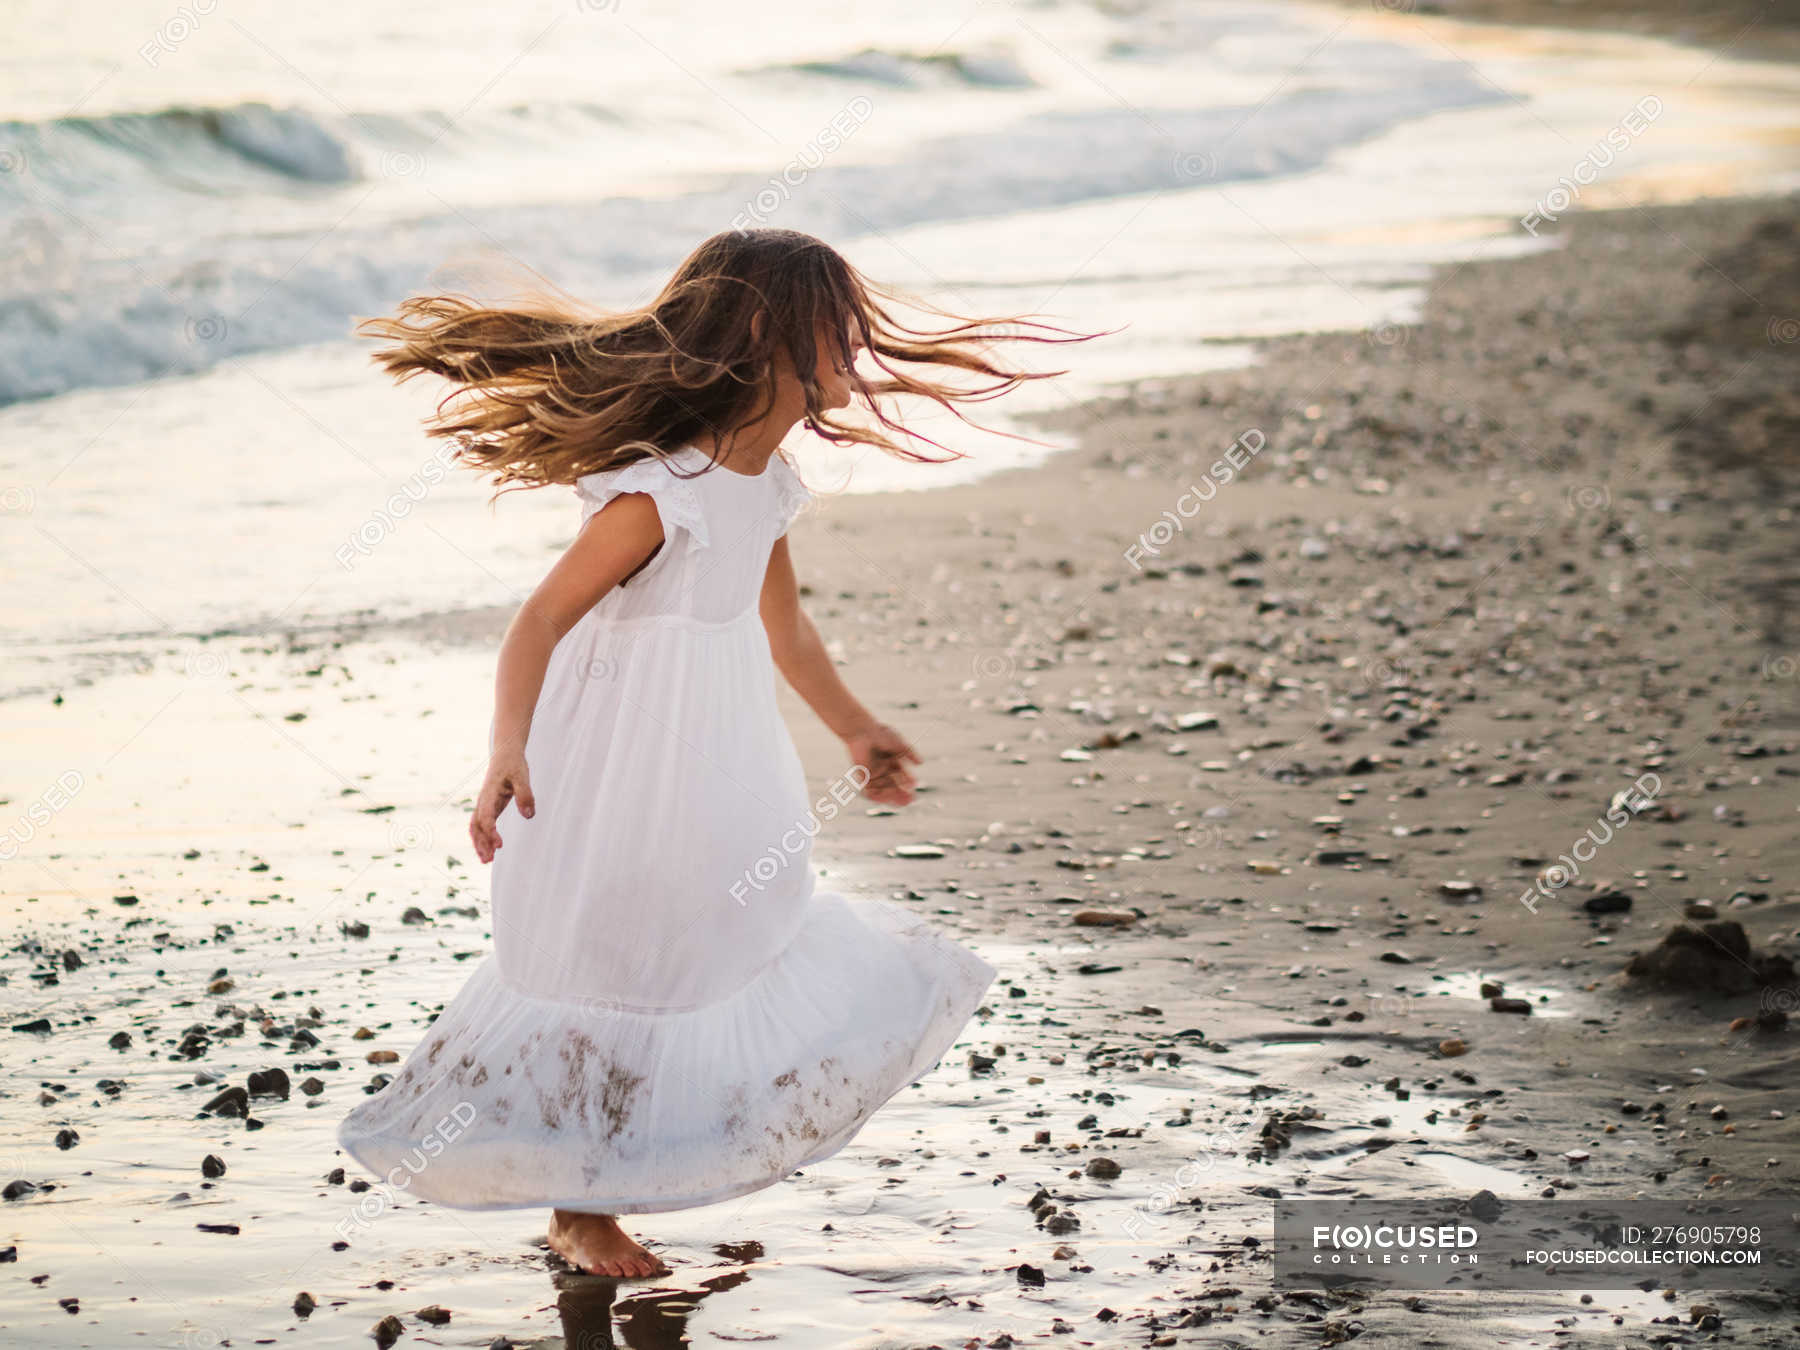 white beach dresses for little girls